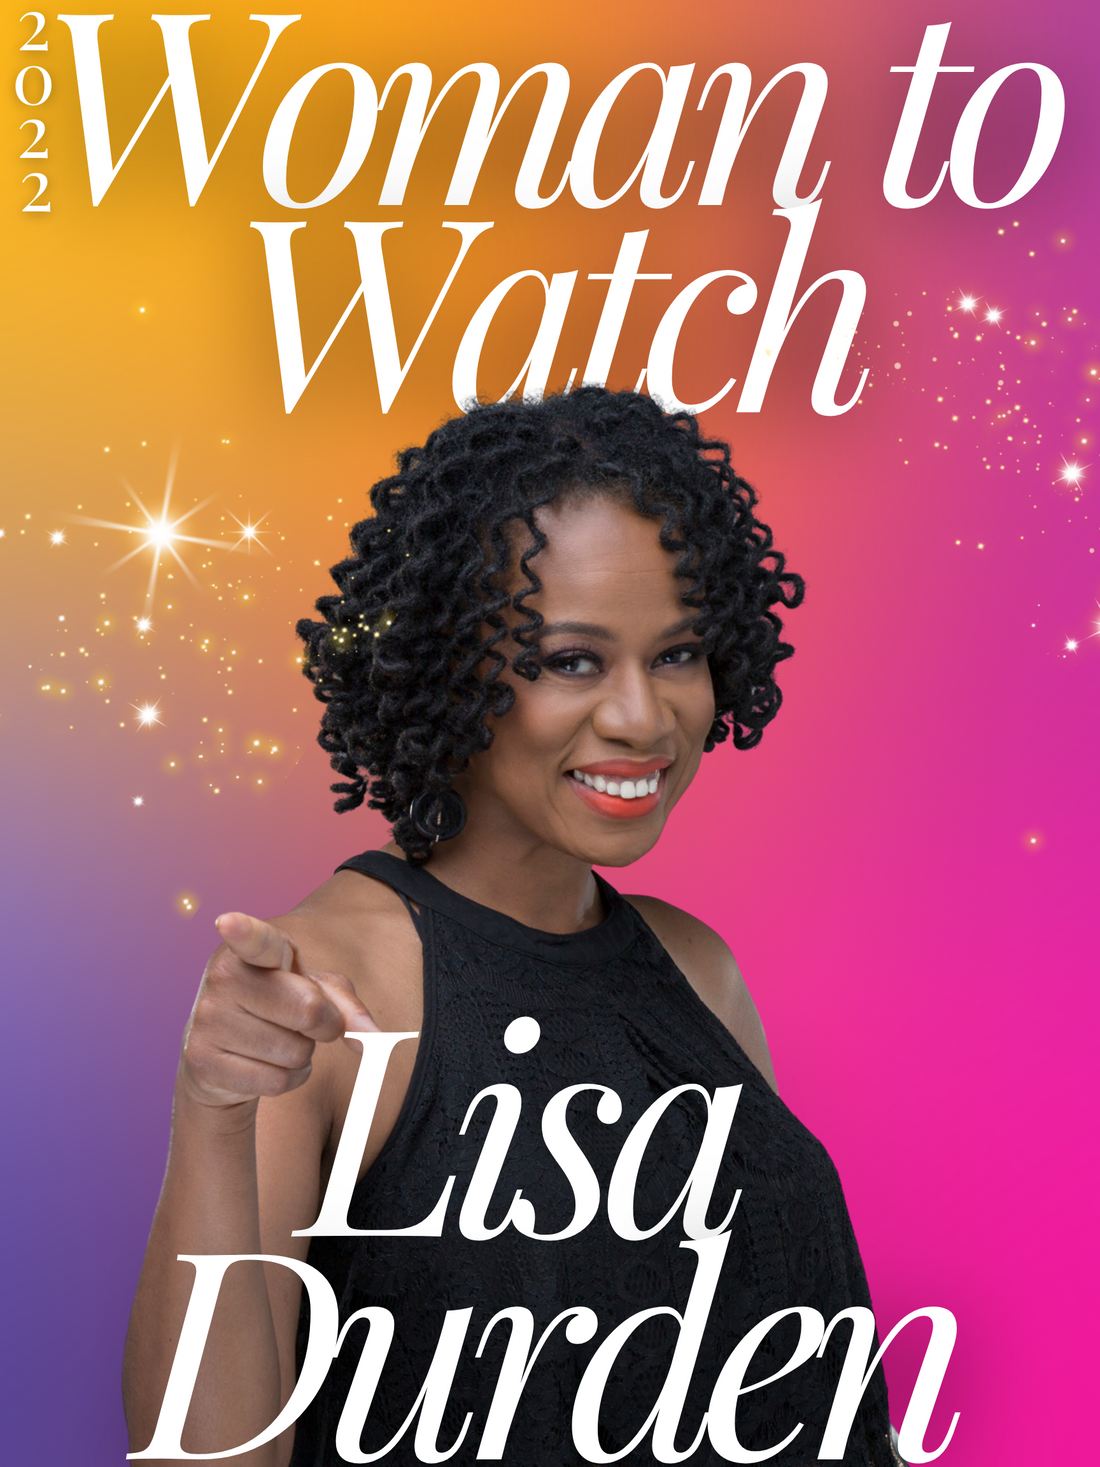 Woman to Watch! Lisa Durden